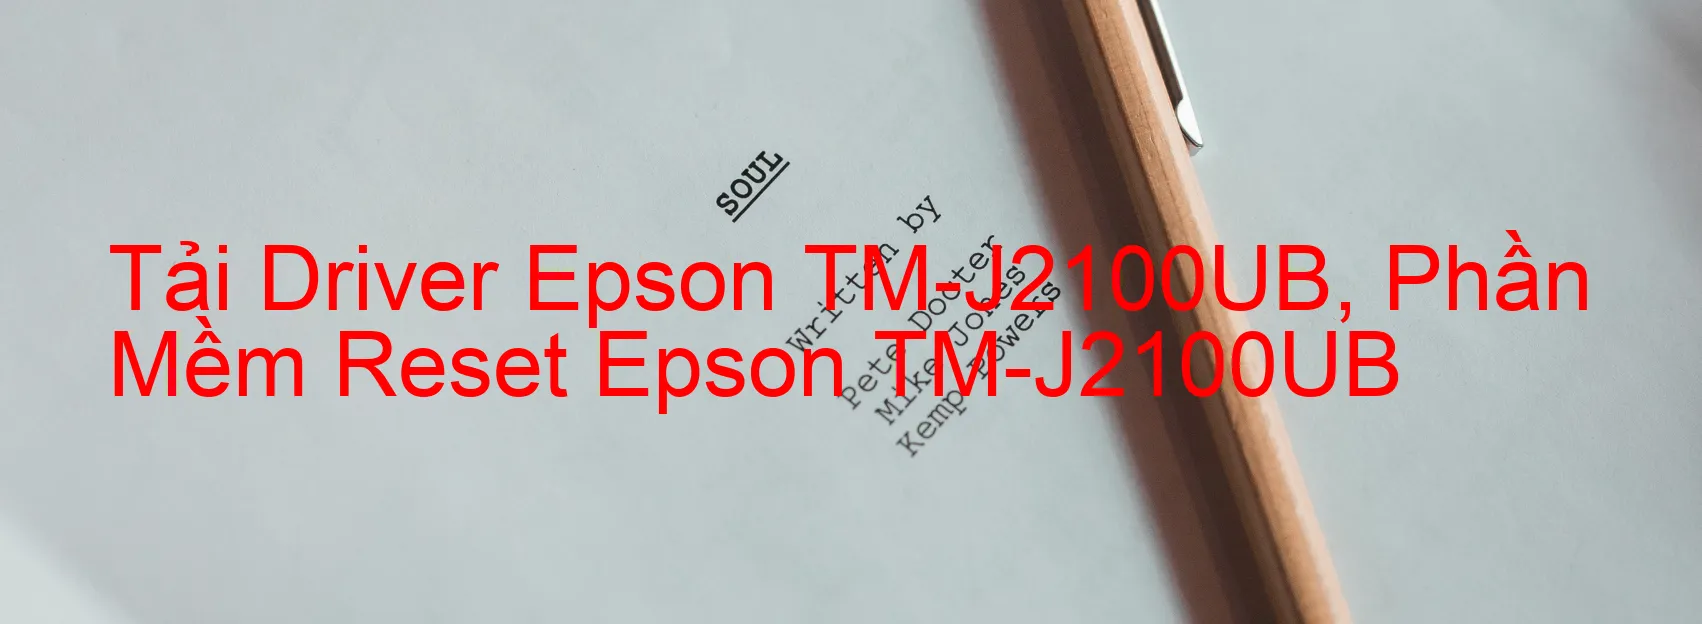 Driver Epson TM-J2100UB, Phần Mềm Reset Epson TM-J2100UB